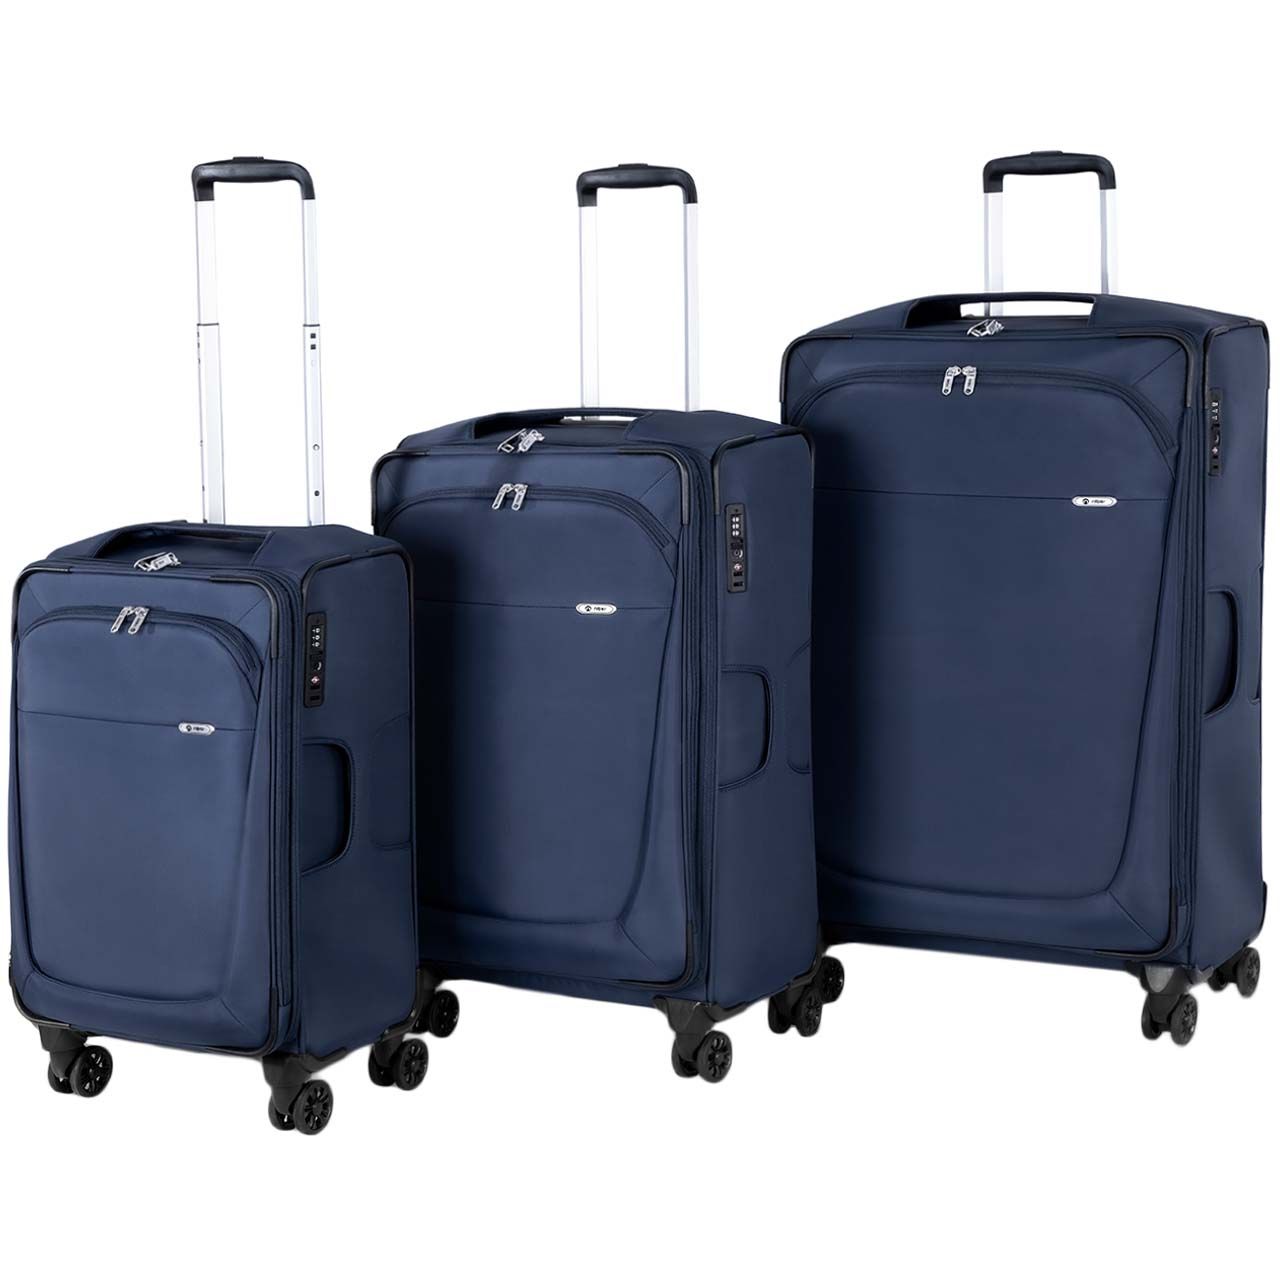 مجموعه سه عددی چمدان نیلپر مدل آوان کد 700678 - 111 -  - 1